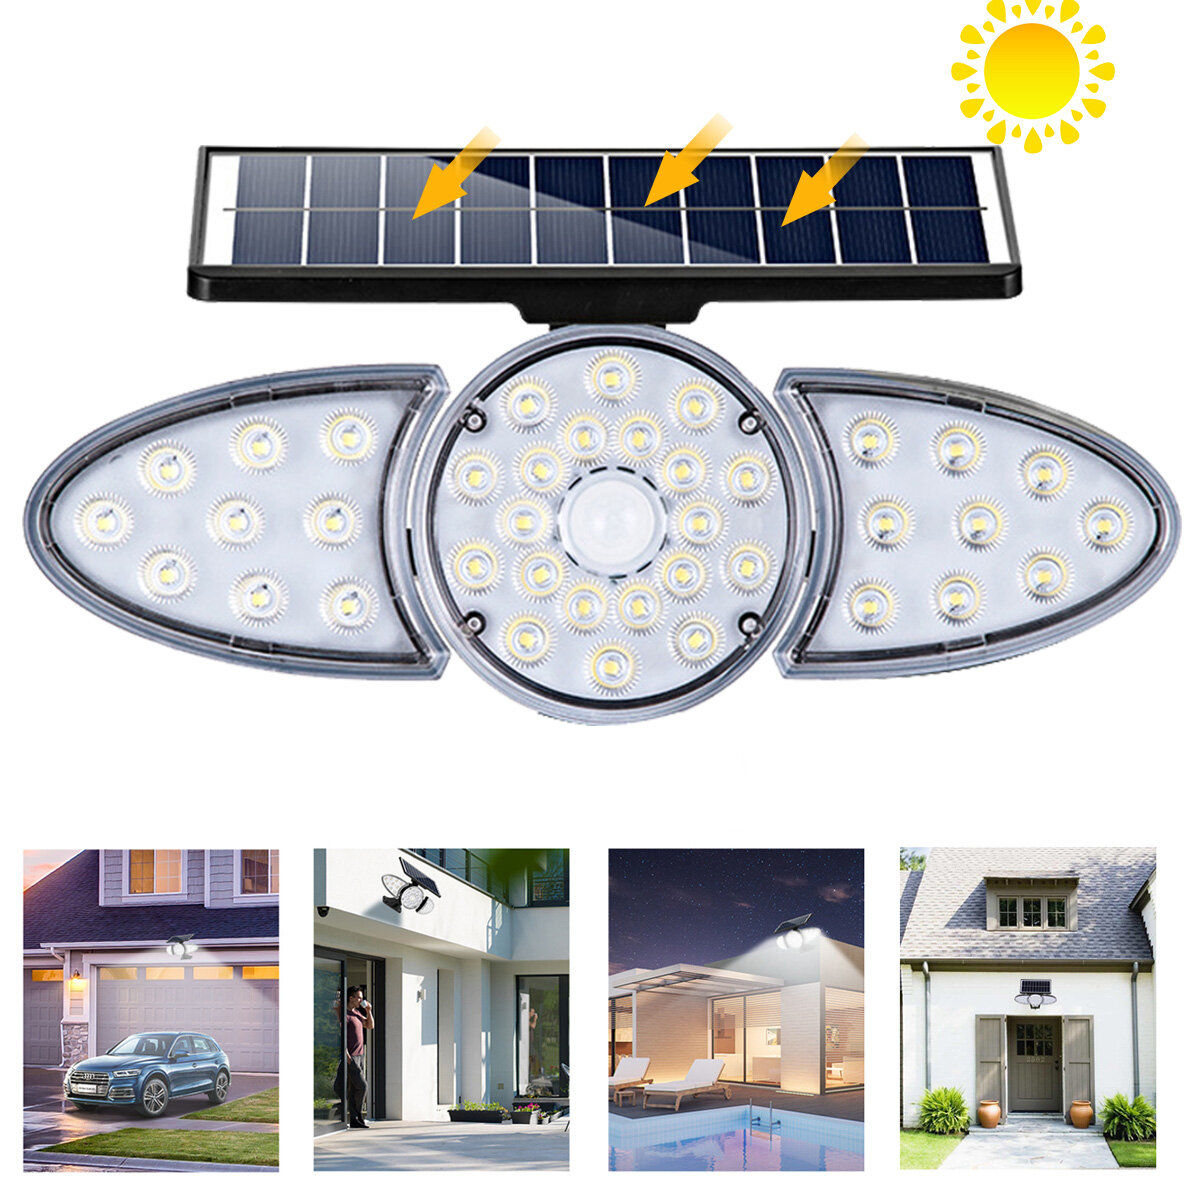 Luce solare a parete a LED regolabile con sensore di movimento, impermeabile IP65, super luminoso faretto solare per giardino esterno.